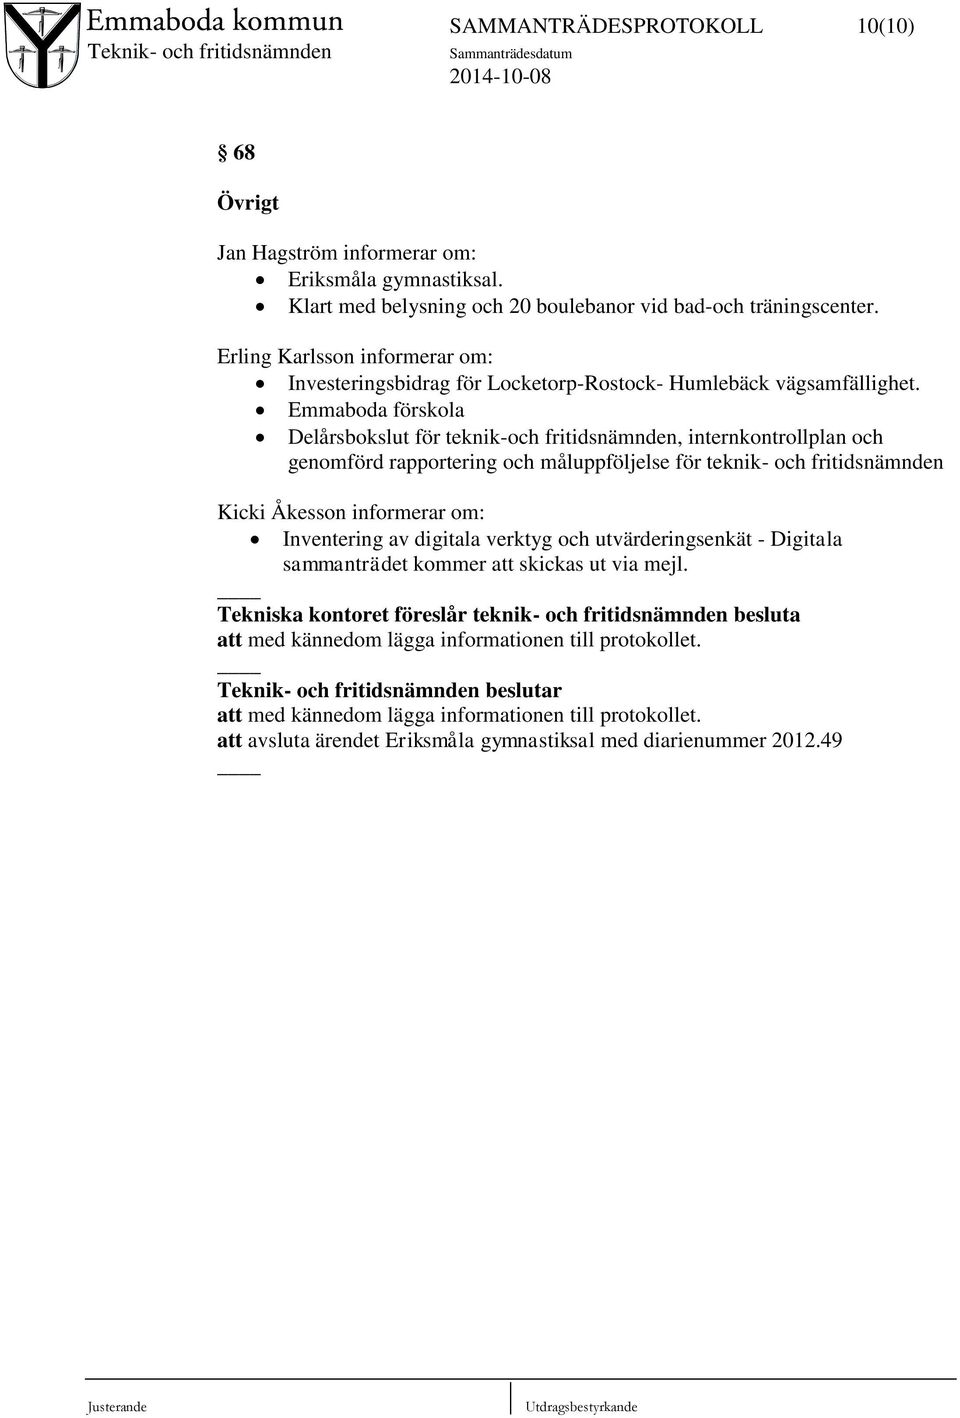 Emmaboda förskola Delårsbokslut för teknik-och fritidsnämnden, internkontrollplan och genomförd rapportering och måluppföljelse för teknik- och fritidsnämnden Kicki Åkesson